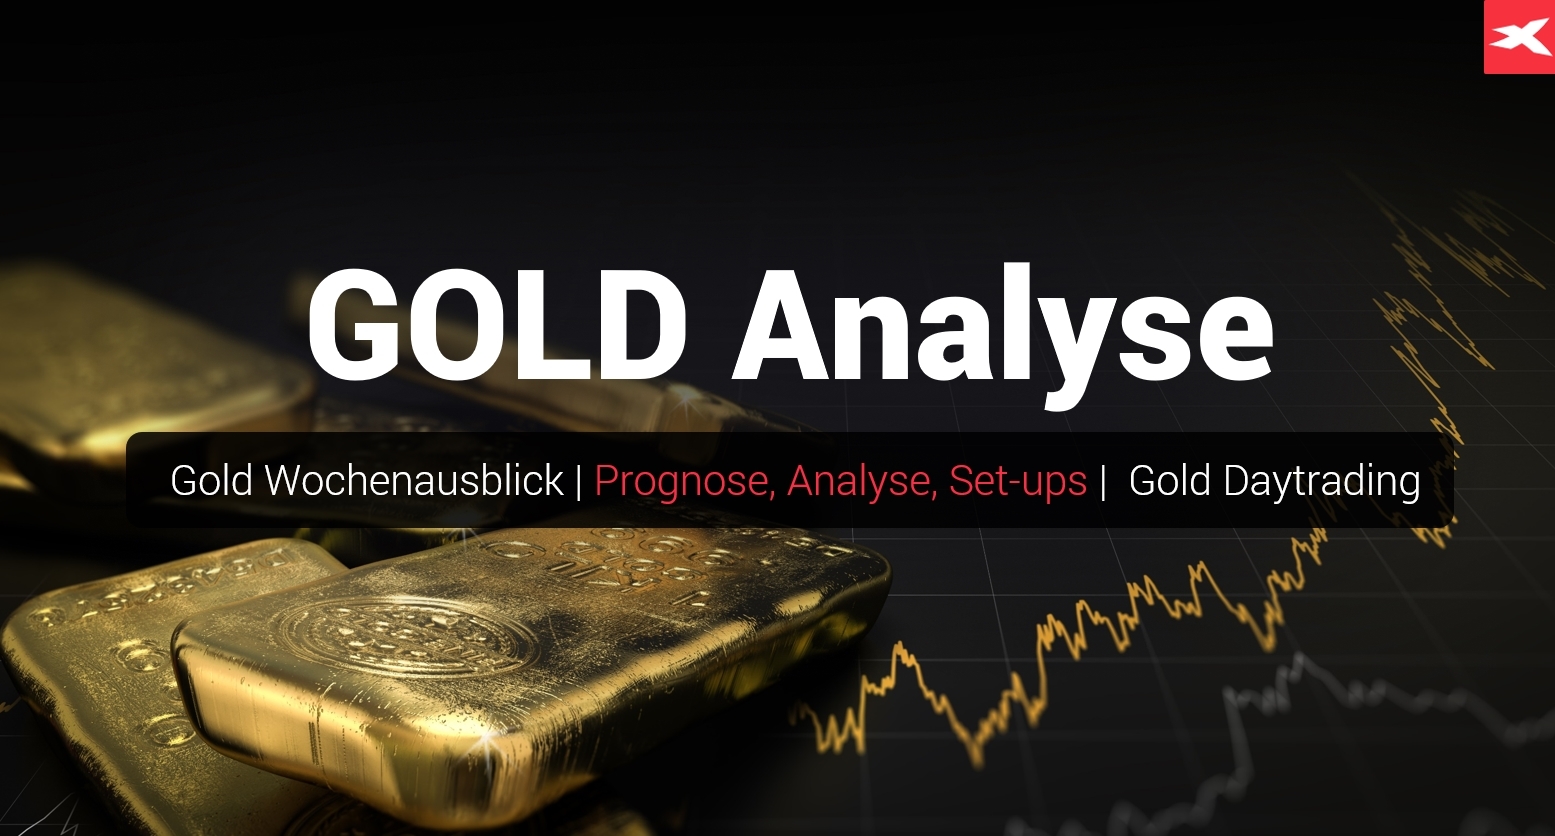 GOLD-Weitere-Erholungsbewegungen-bis-dicht-an-die-2-000-USD-sind-möglich-Die-aktuelle-Gold-Analyse-am-28-01-23-Chartanalyse-Wochenausblick-Trading-Setups-Kommentar-Jens-Chrzanowski-GodmodeTrader.de-1